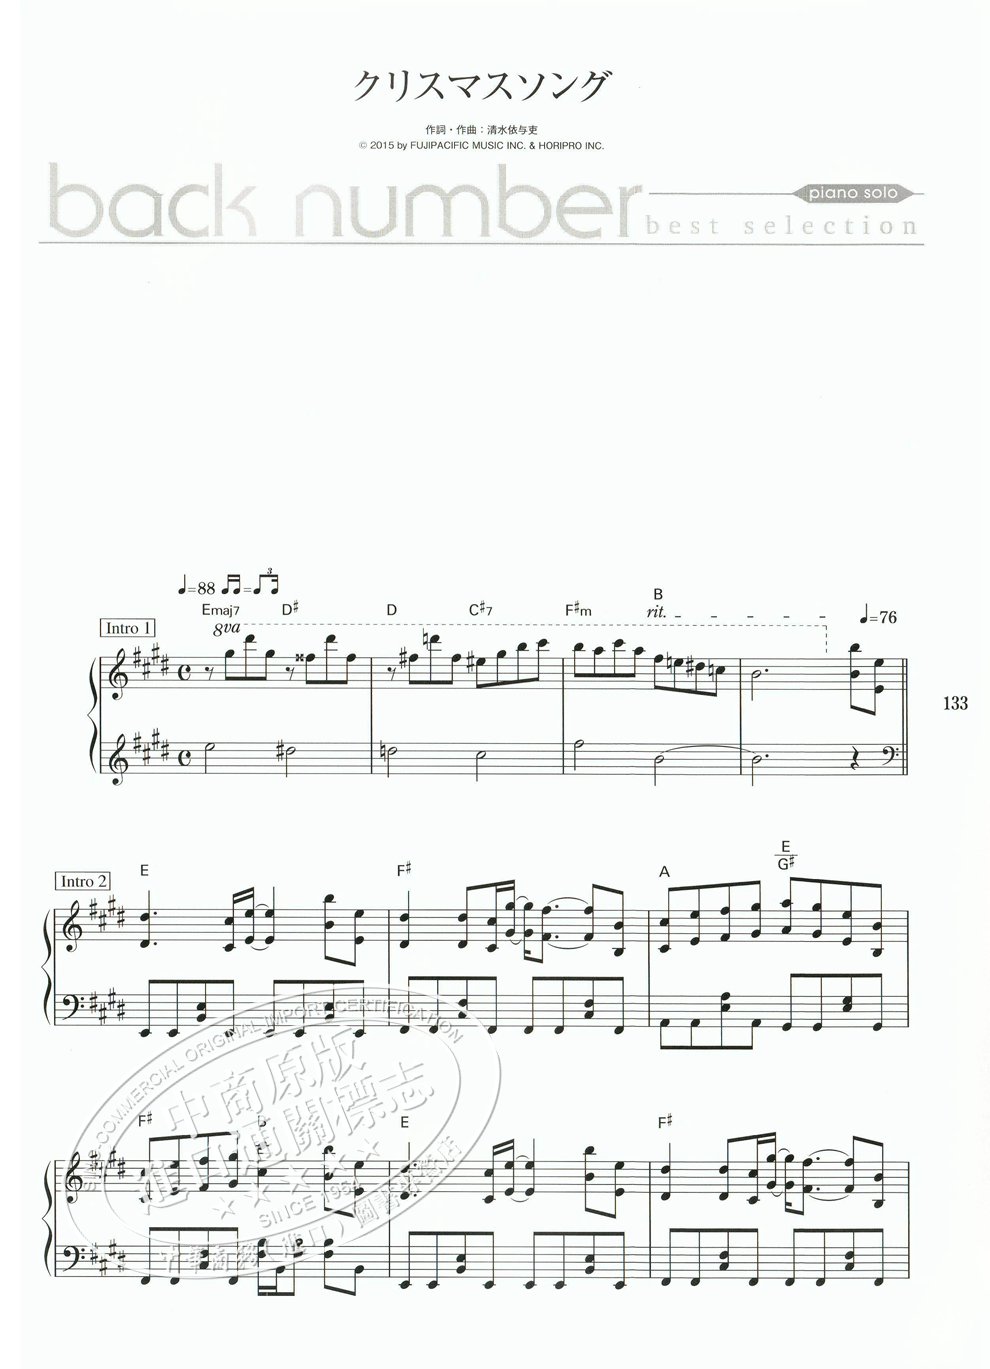 Back Number 钢琴谱best Selectionピアノソロbacknumber 摘要书评试读 京东图书